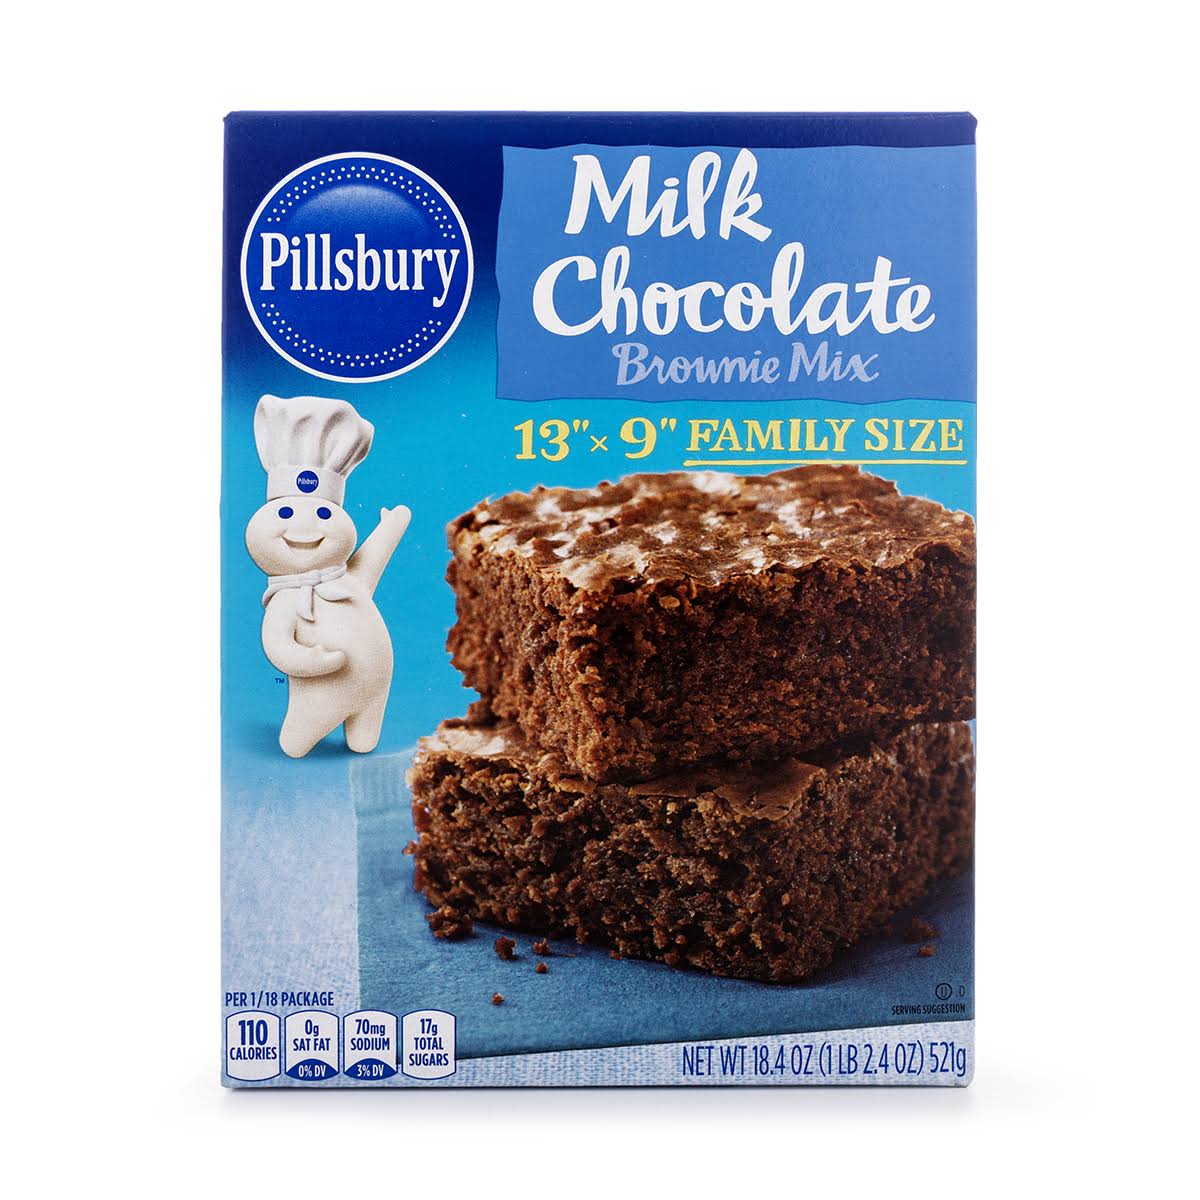 Pillsbury Brownie Mix, Milk Chocolate, Family Size - 18.4 oz